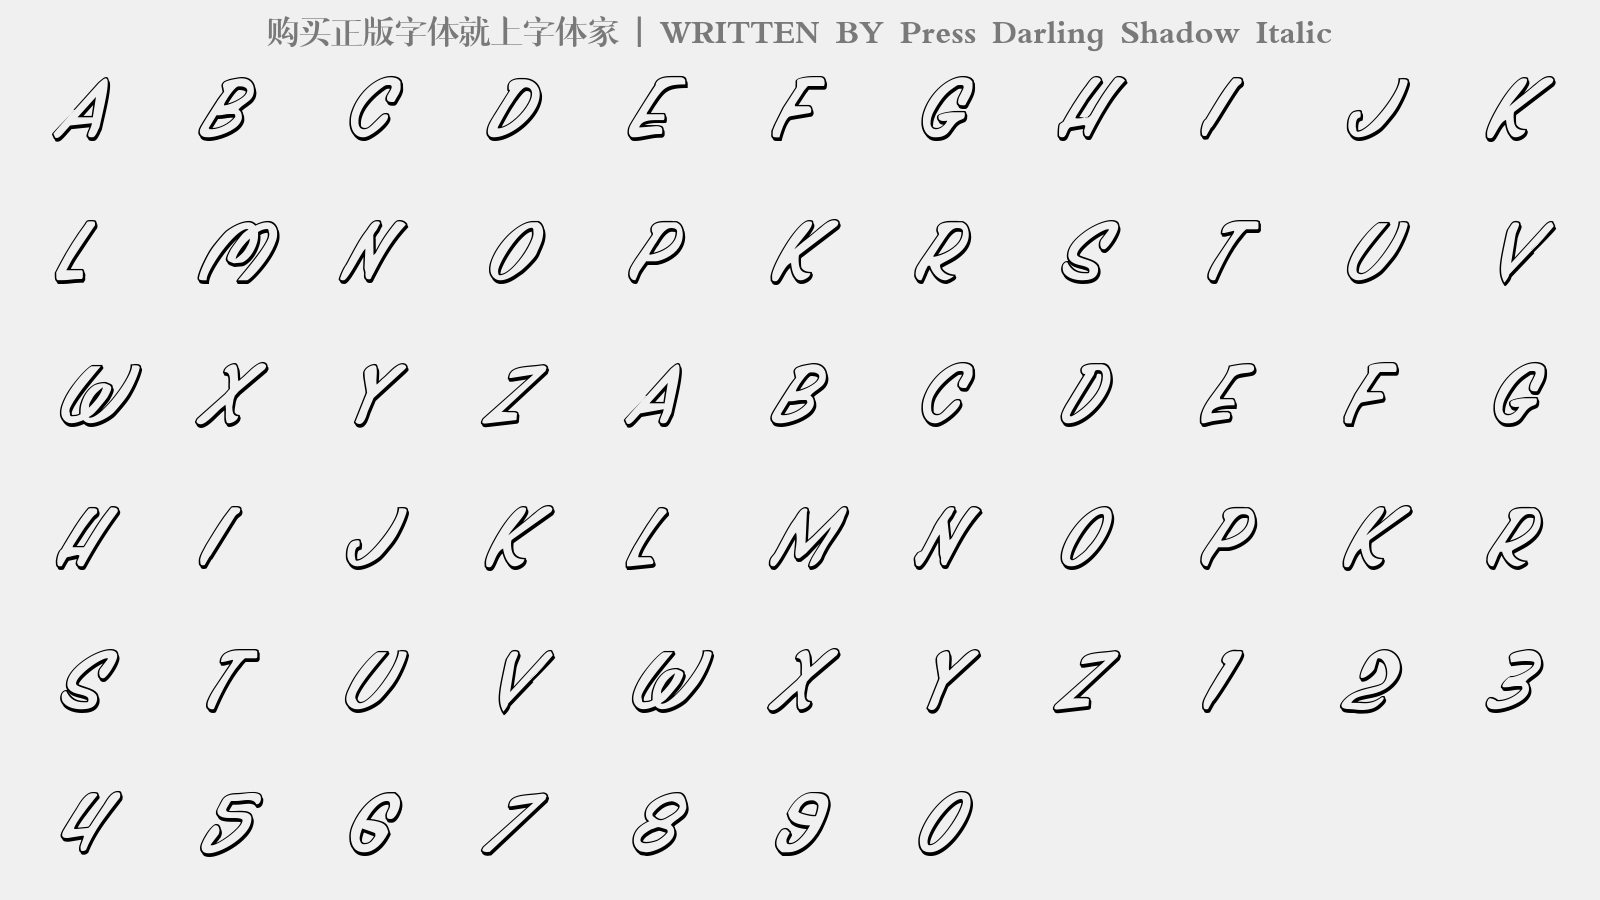 Press Darling Shadow Italic - 大写字母/小写字母/数字